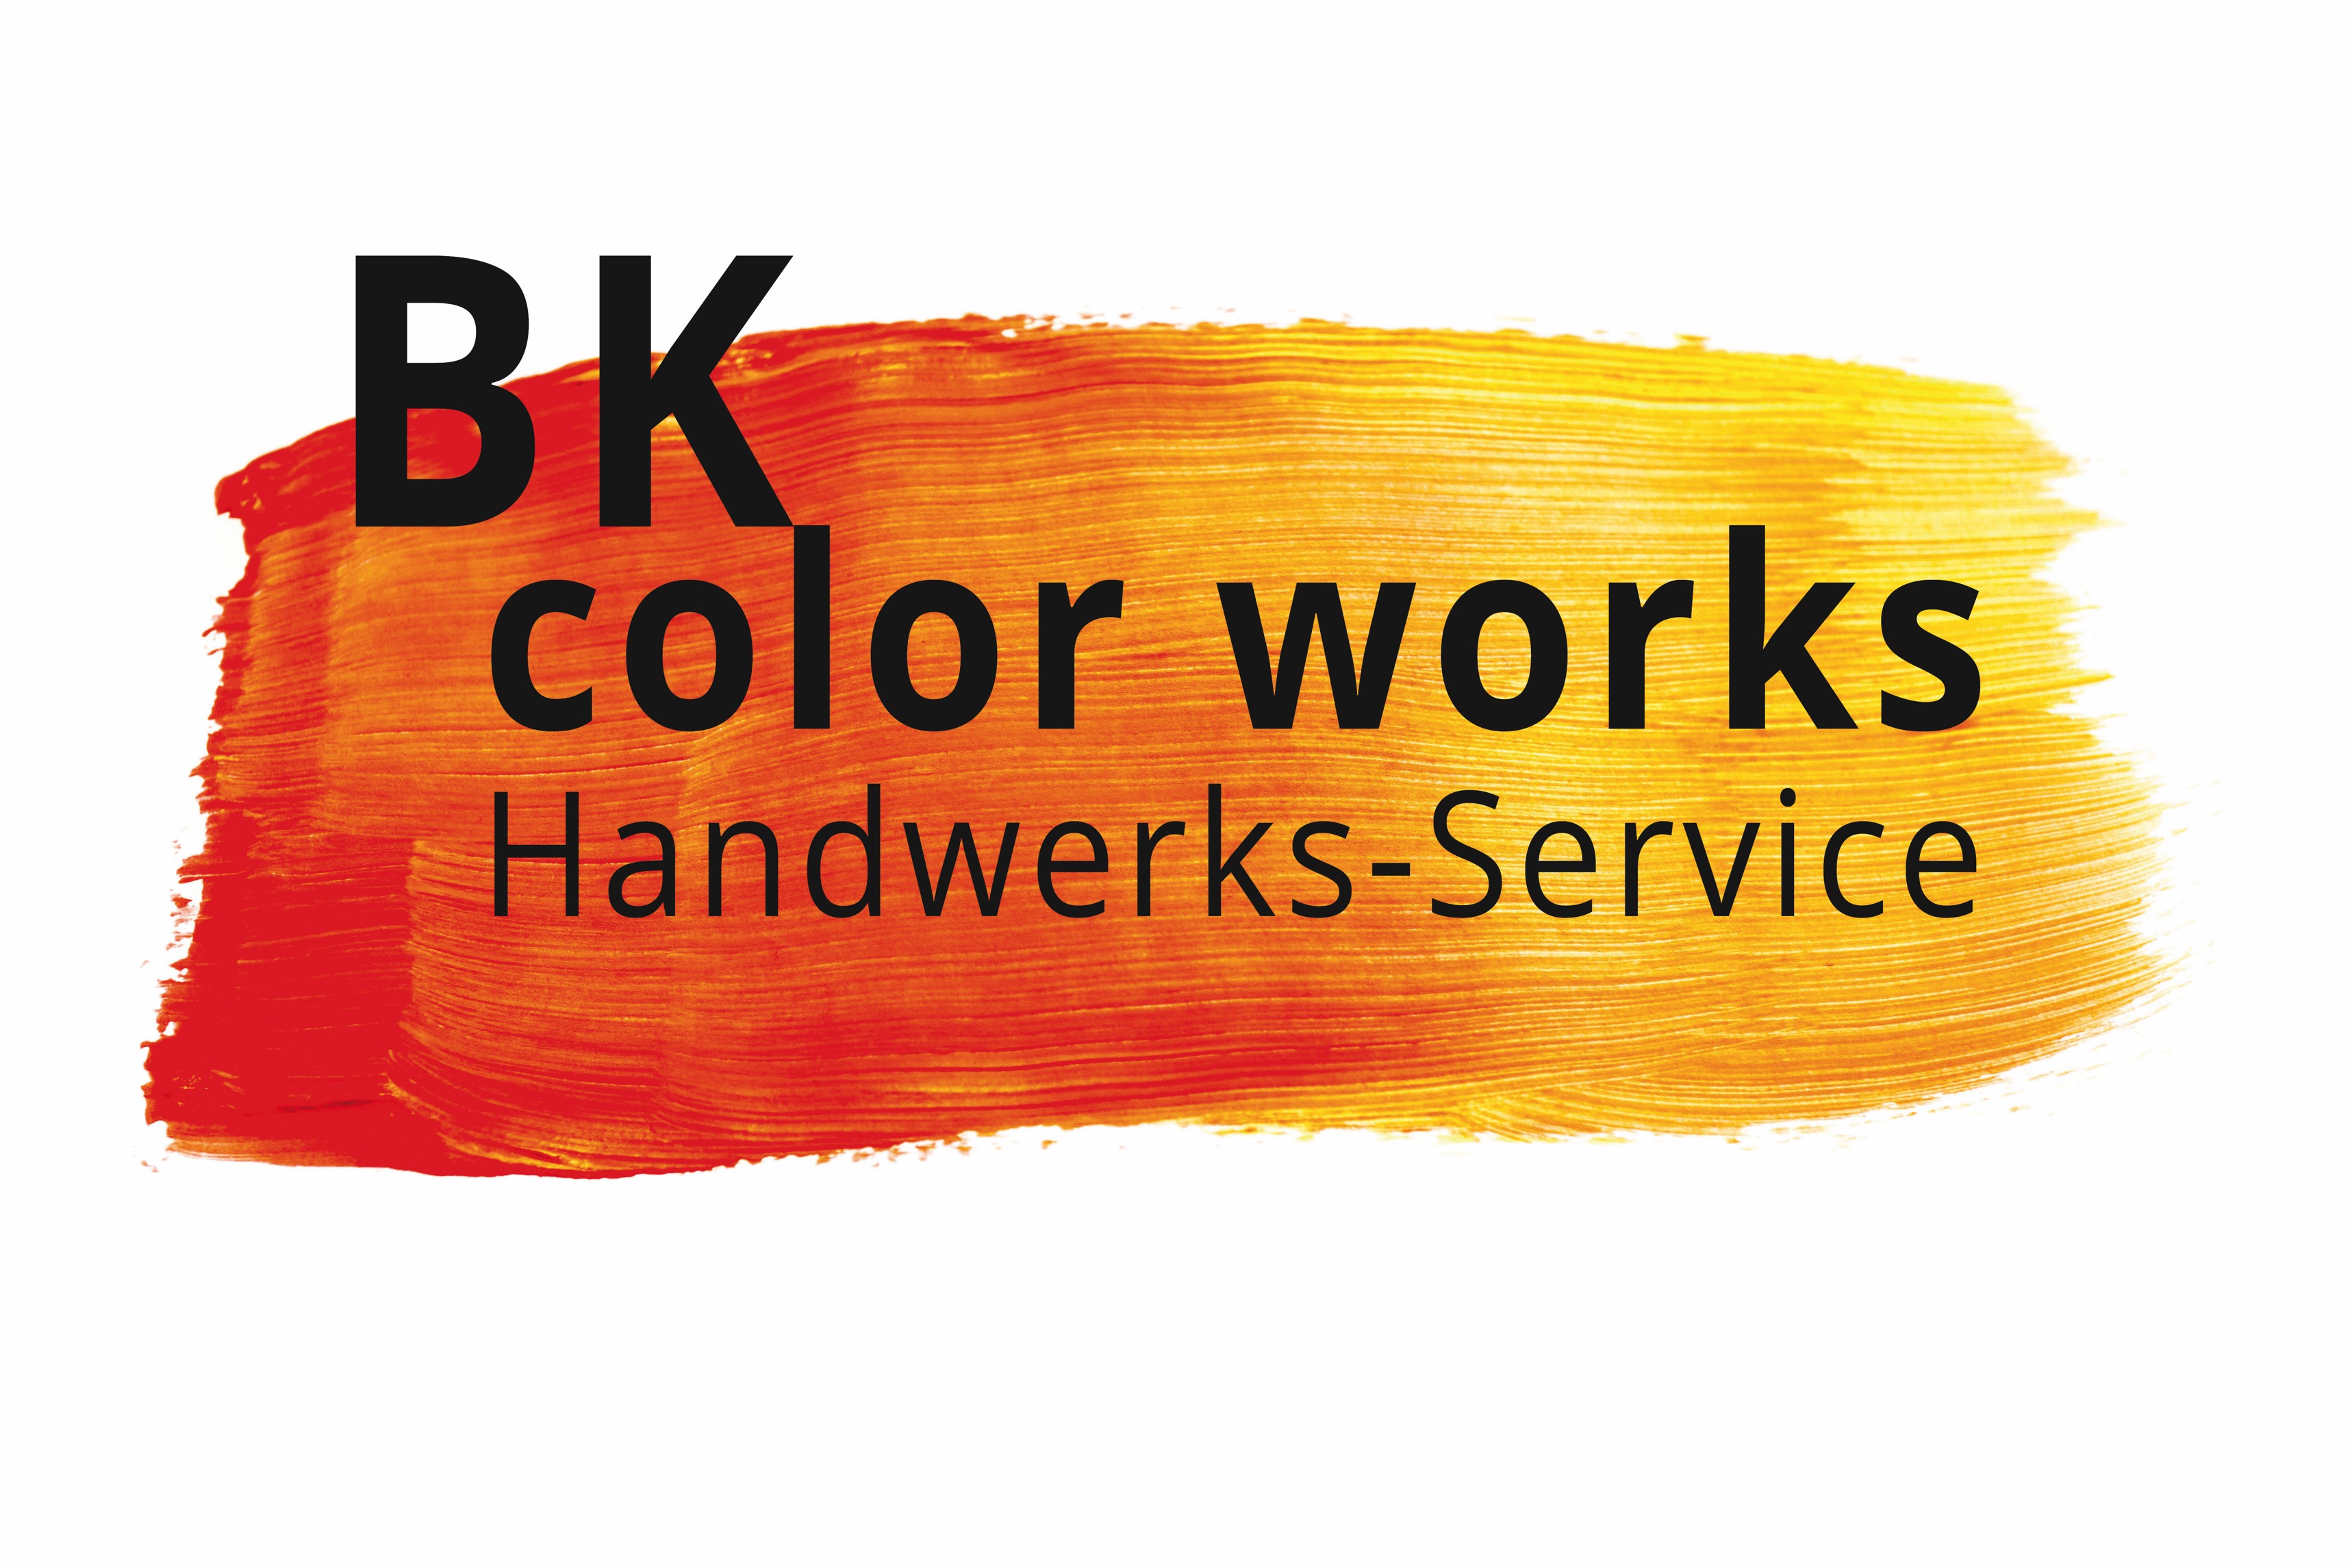 BK color works - Home